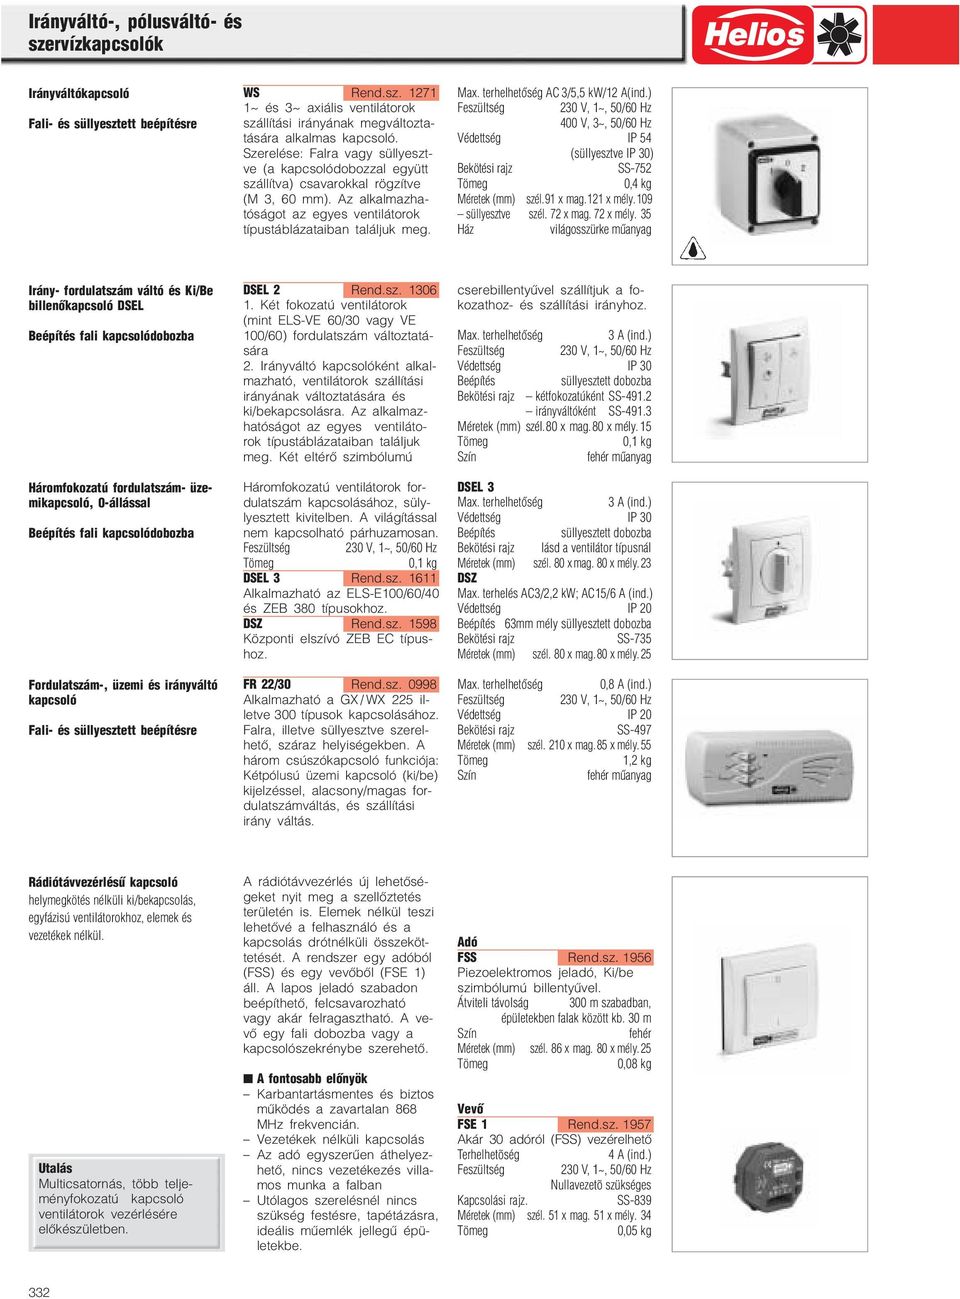 A ventilátorok működtetéséhez a HELIOS a kép szerinti szabályzó, vezérlő,  és kapcsoló készülékcsopor tokat kínálja. - PDF Ingyenes letöltés